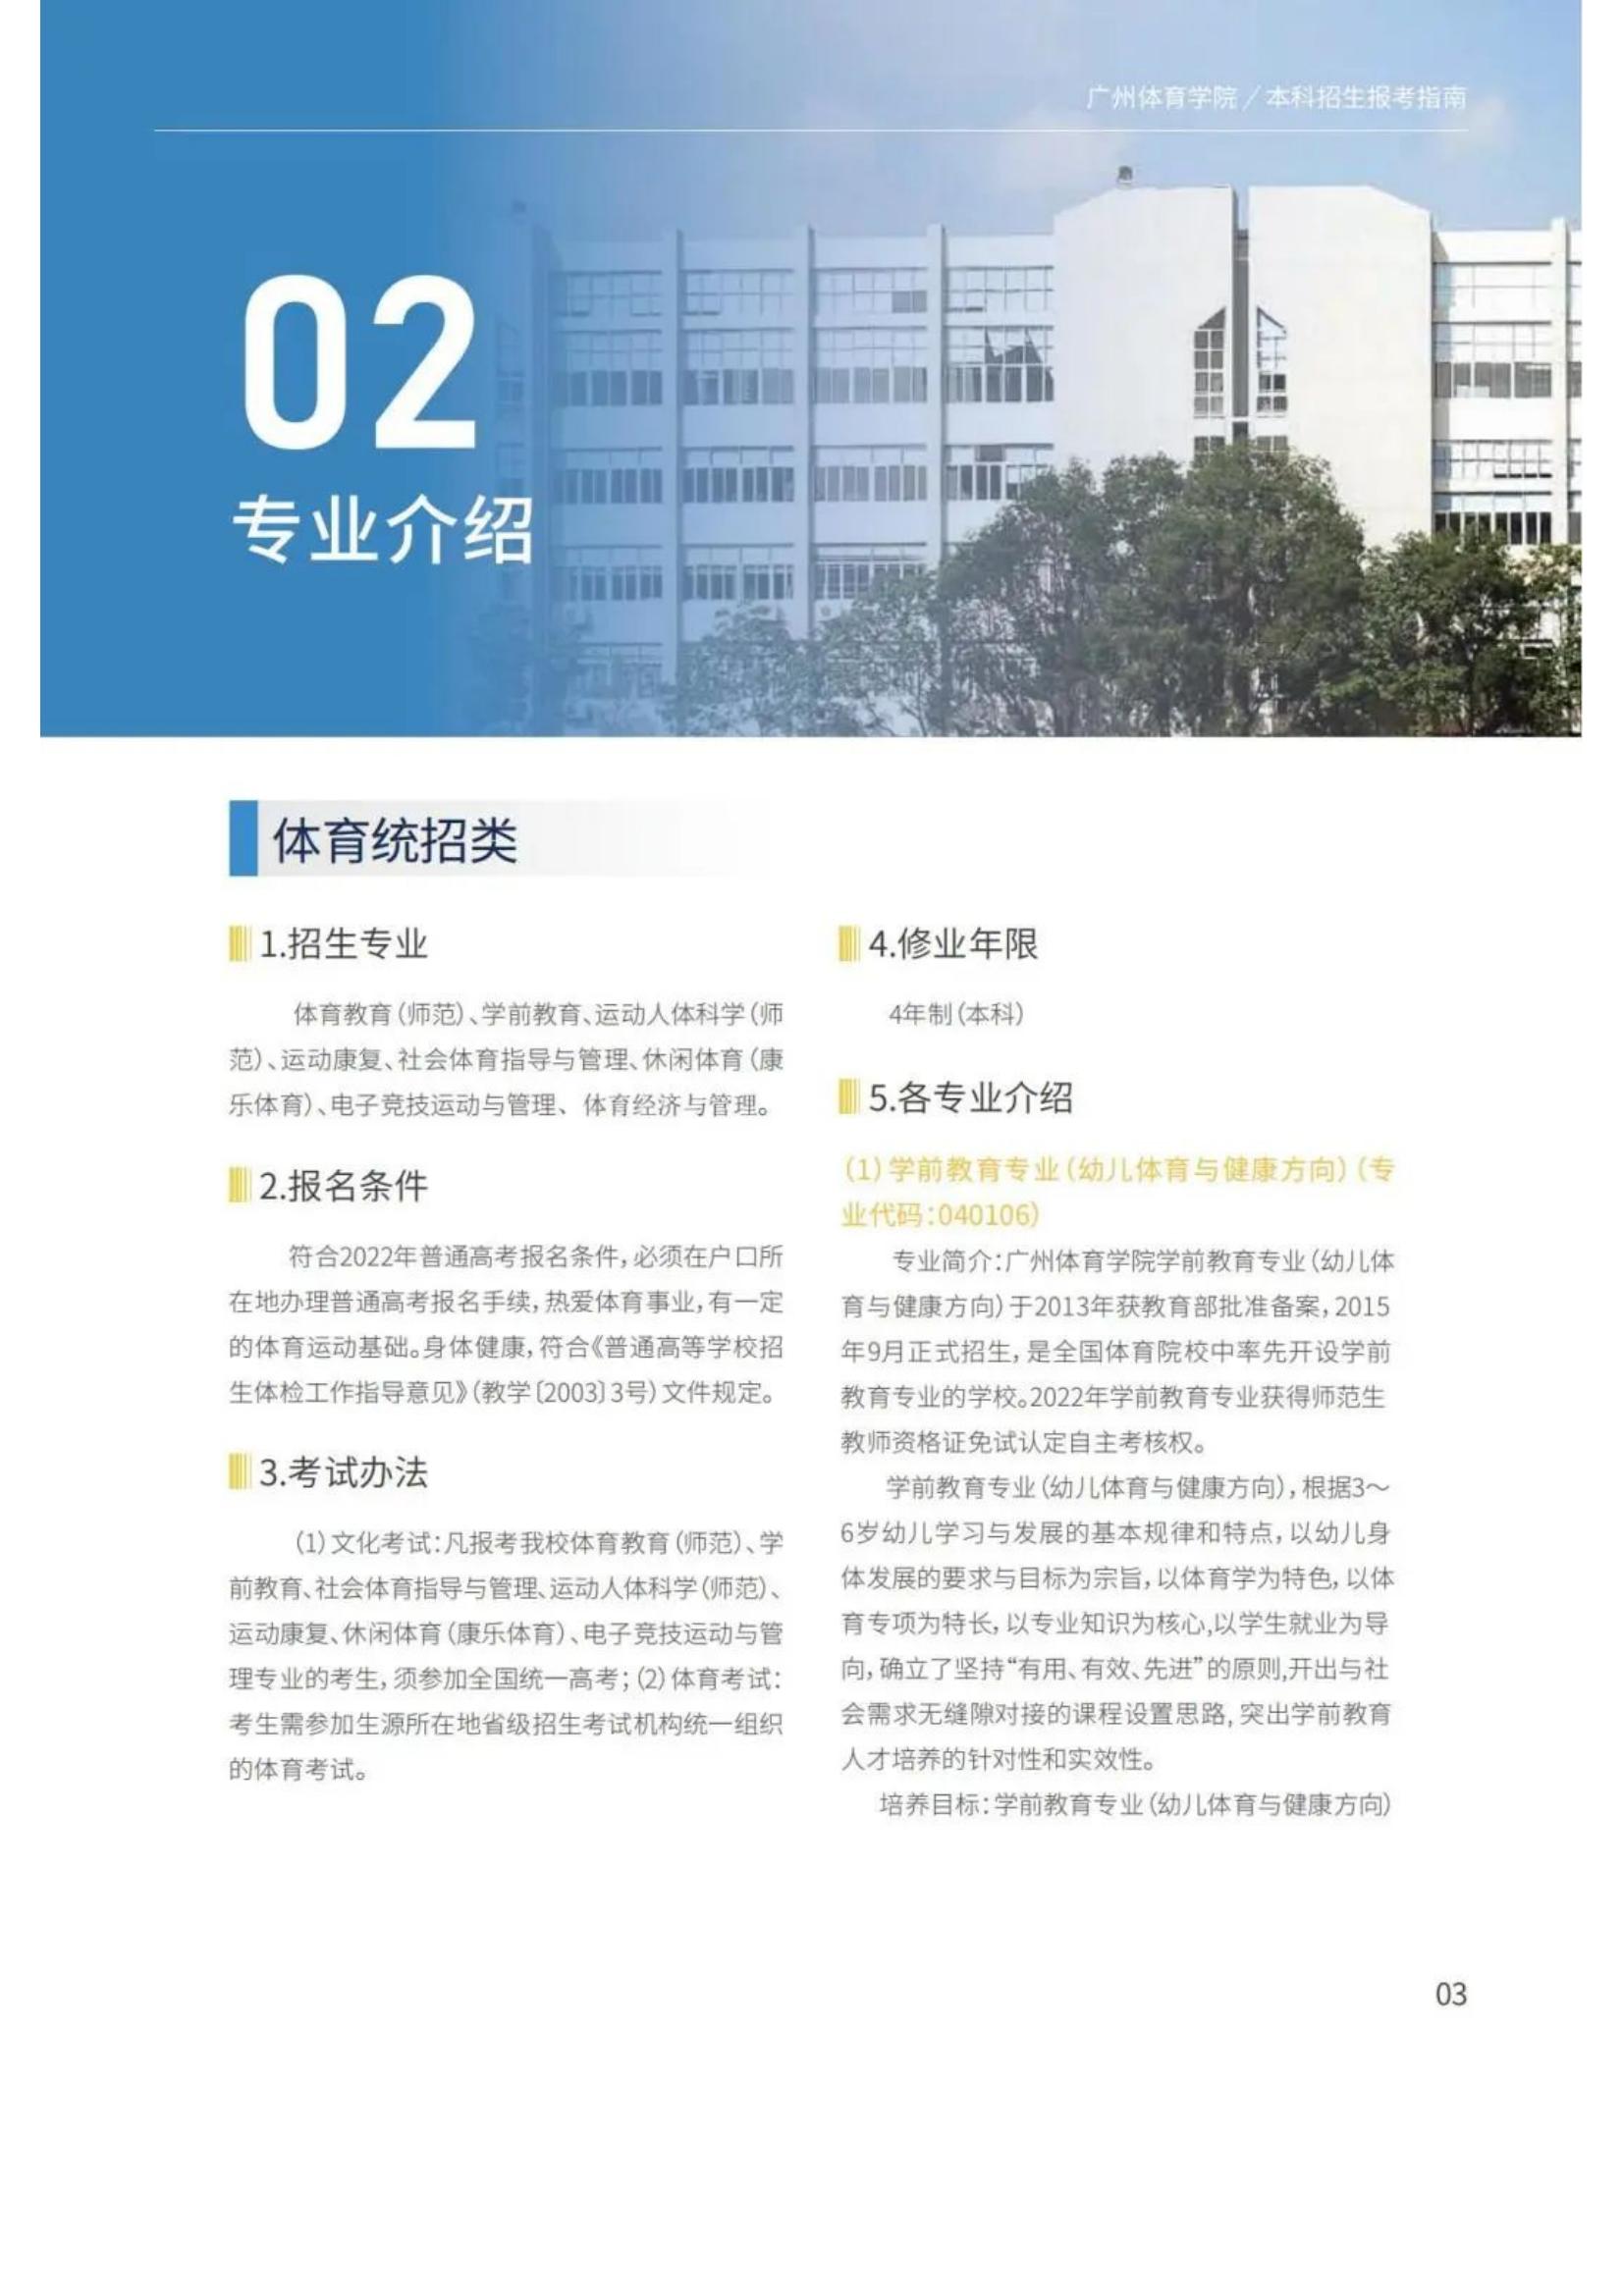 广州体育学院2022年报考指南发布_05.jpg